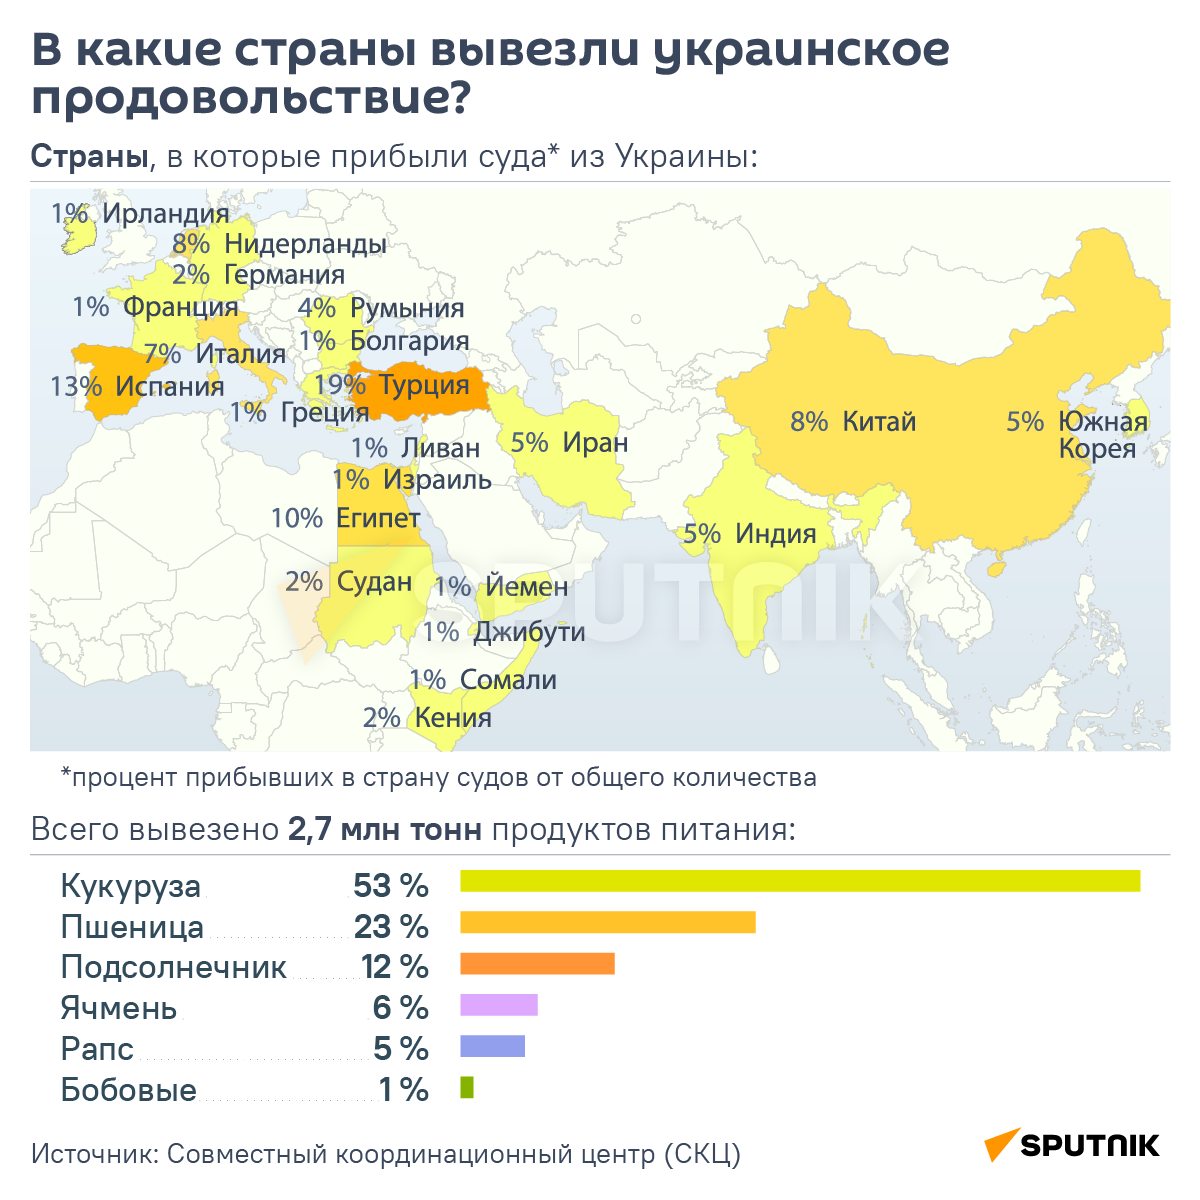 Инфографика: В какие страны вывезли украинское продовольствие - Sputnik Азербайджан